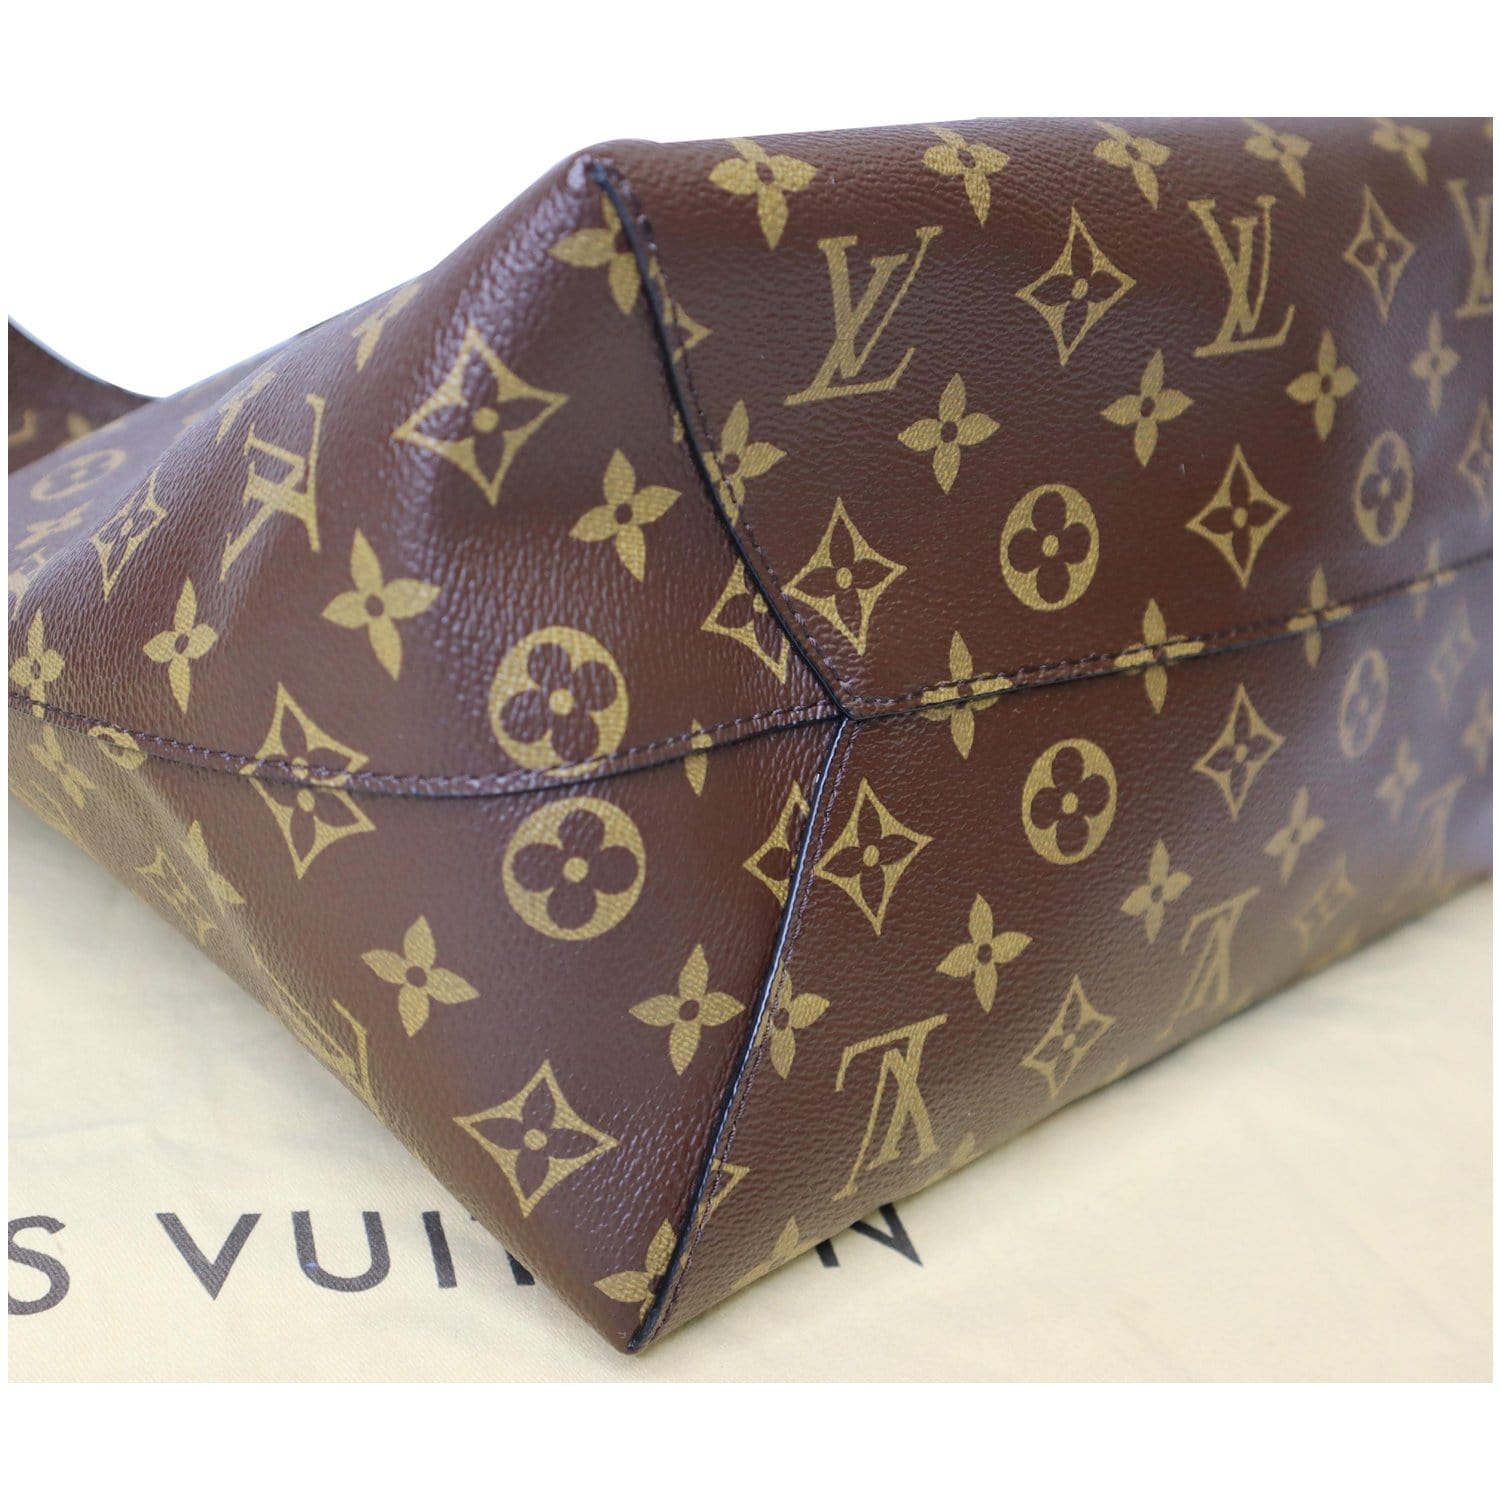 Louis Vuitton, Bags, Louis Vuitton Flower Hobo Circa 29